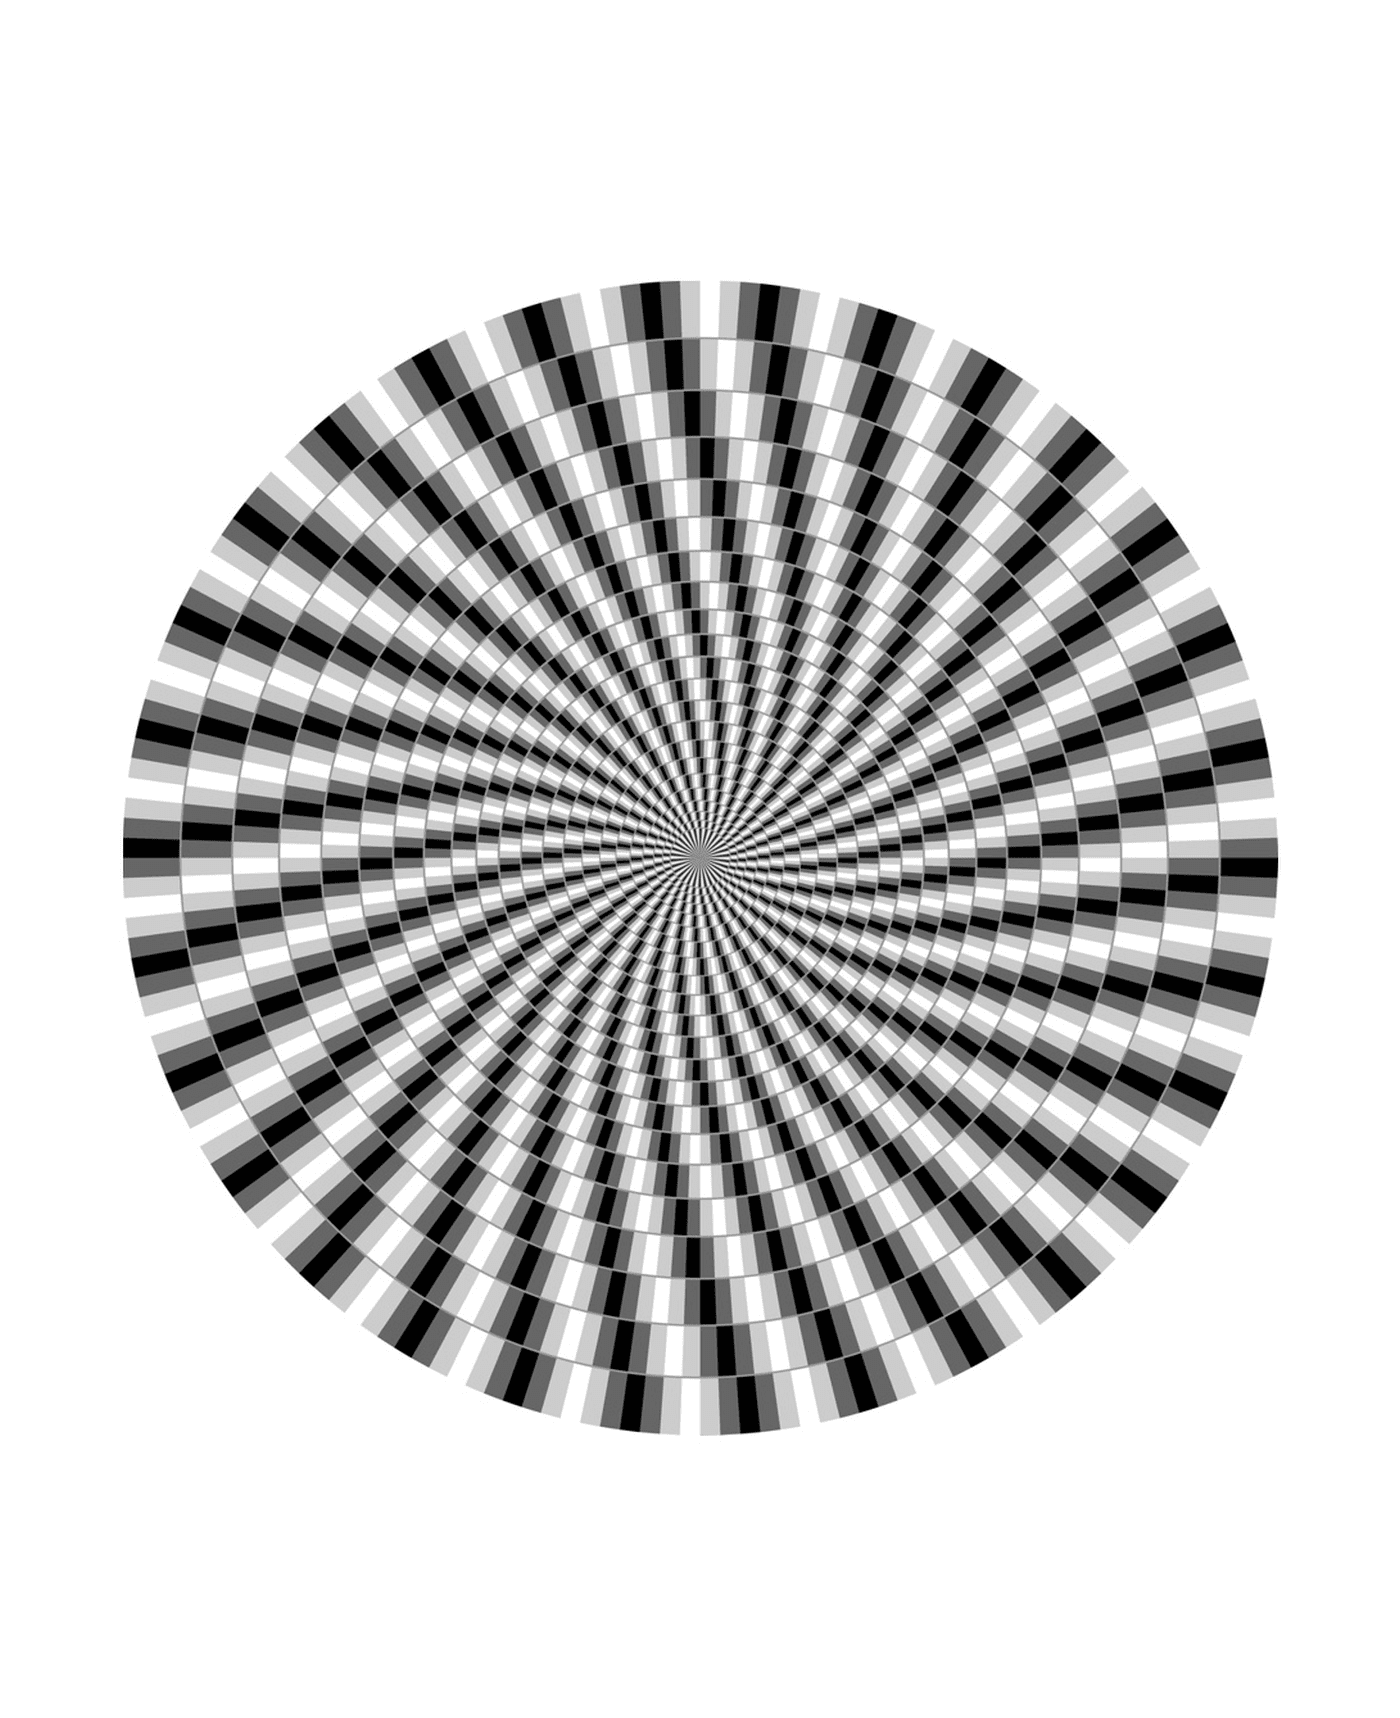  оптическая иллюзия 